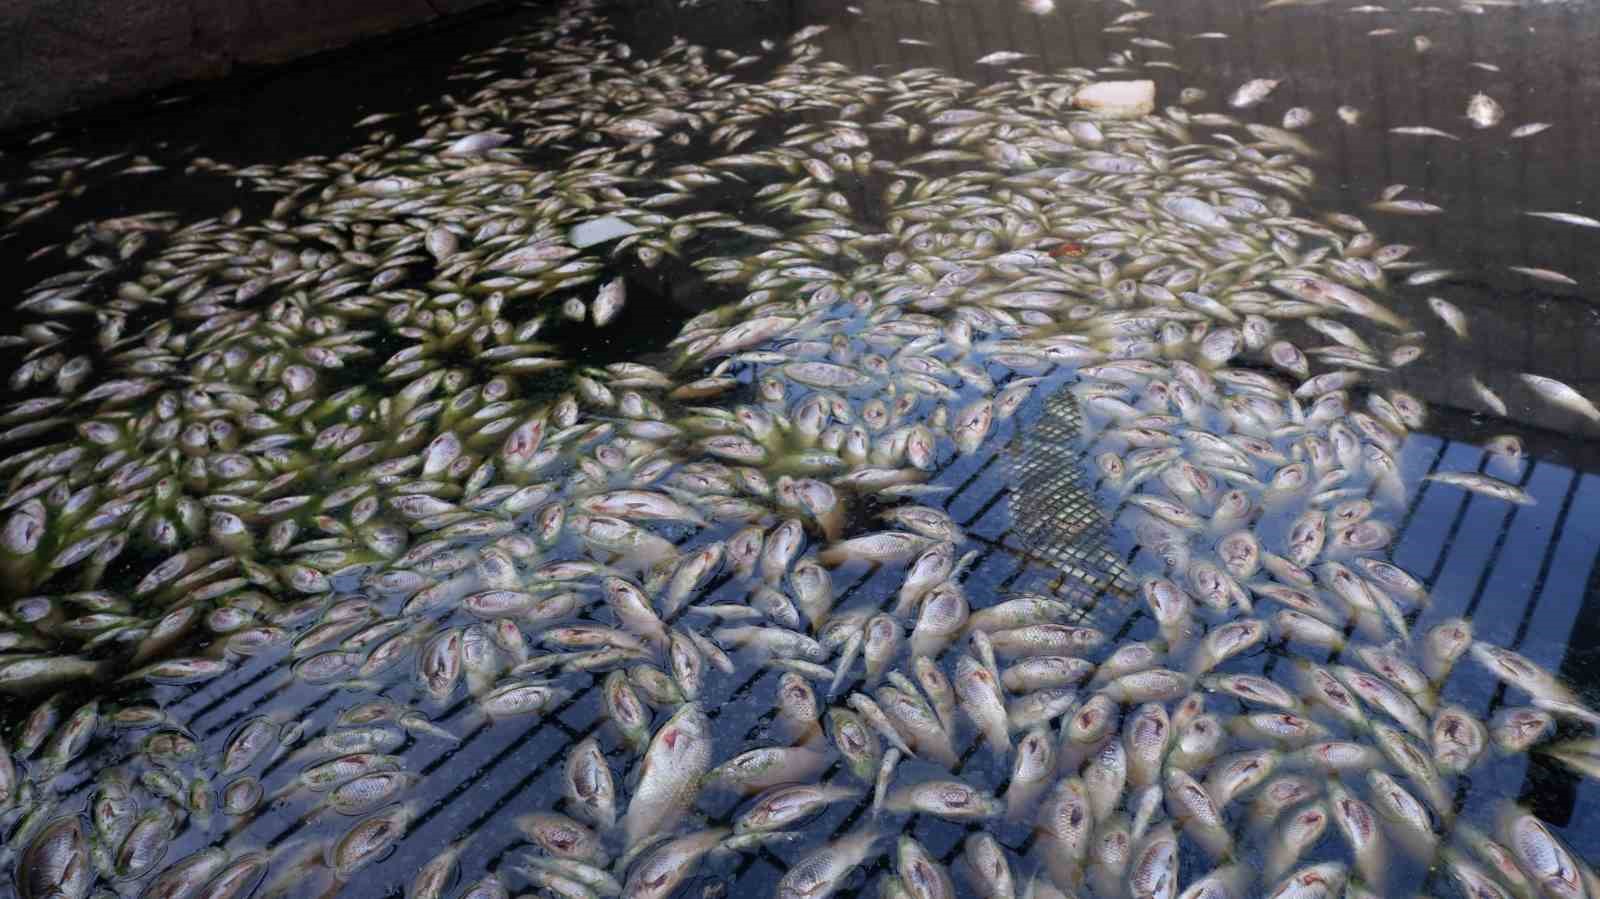 Edirne’de toplu balık ölümleri